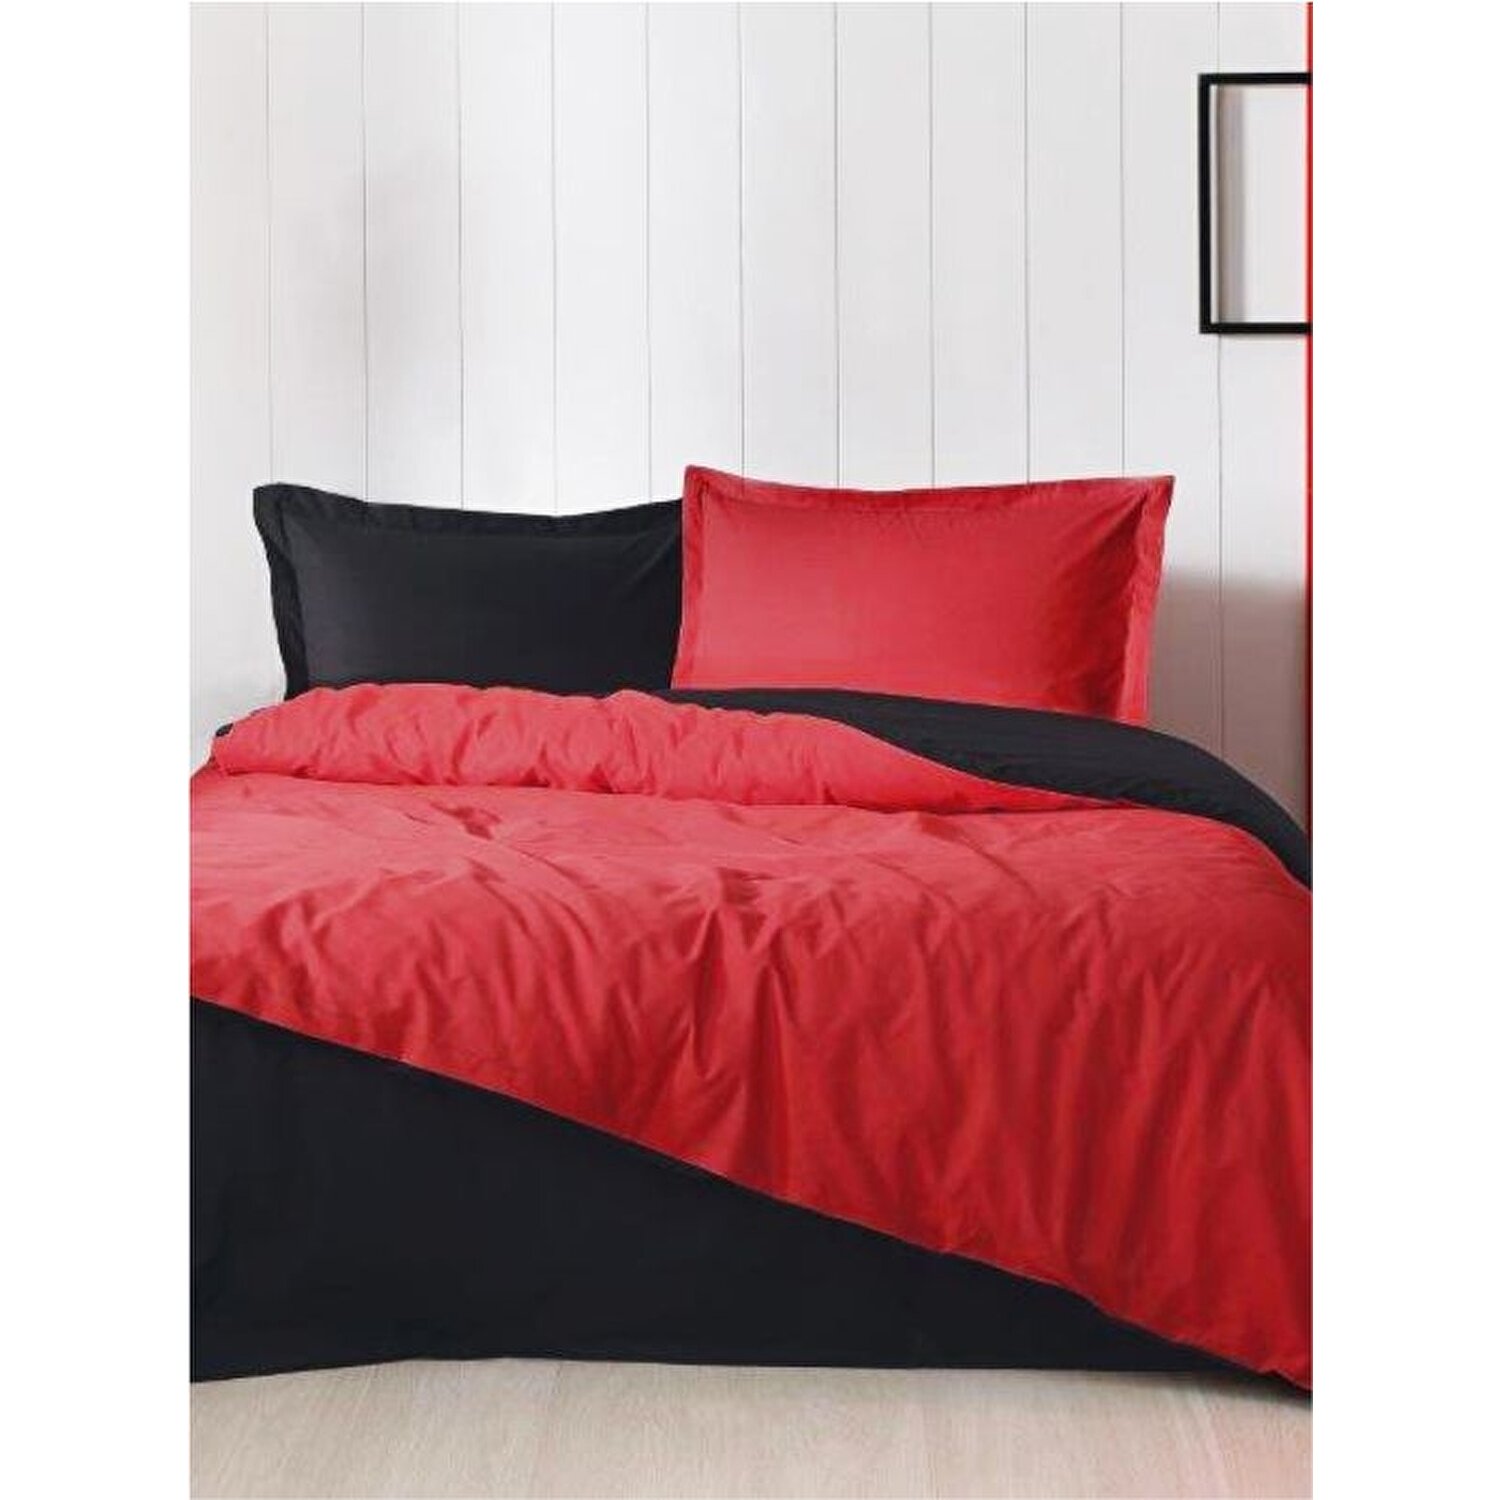 Özdilek Colormix Красный Черный Комплект постельного белья